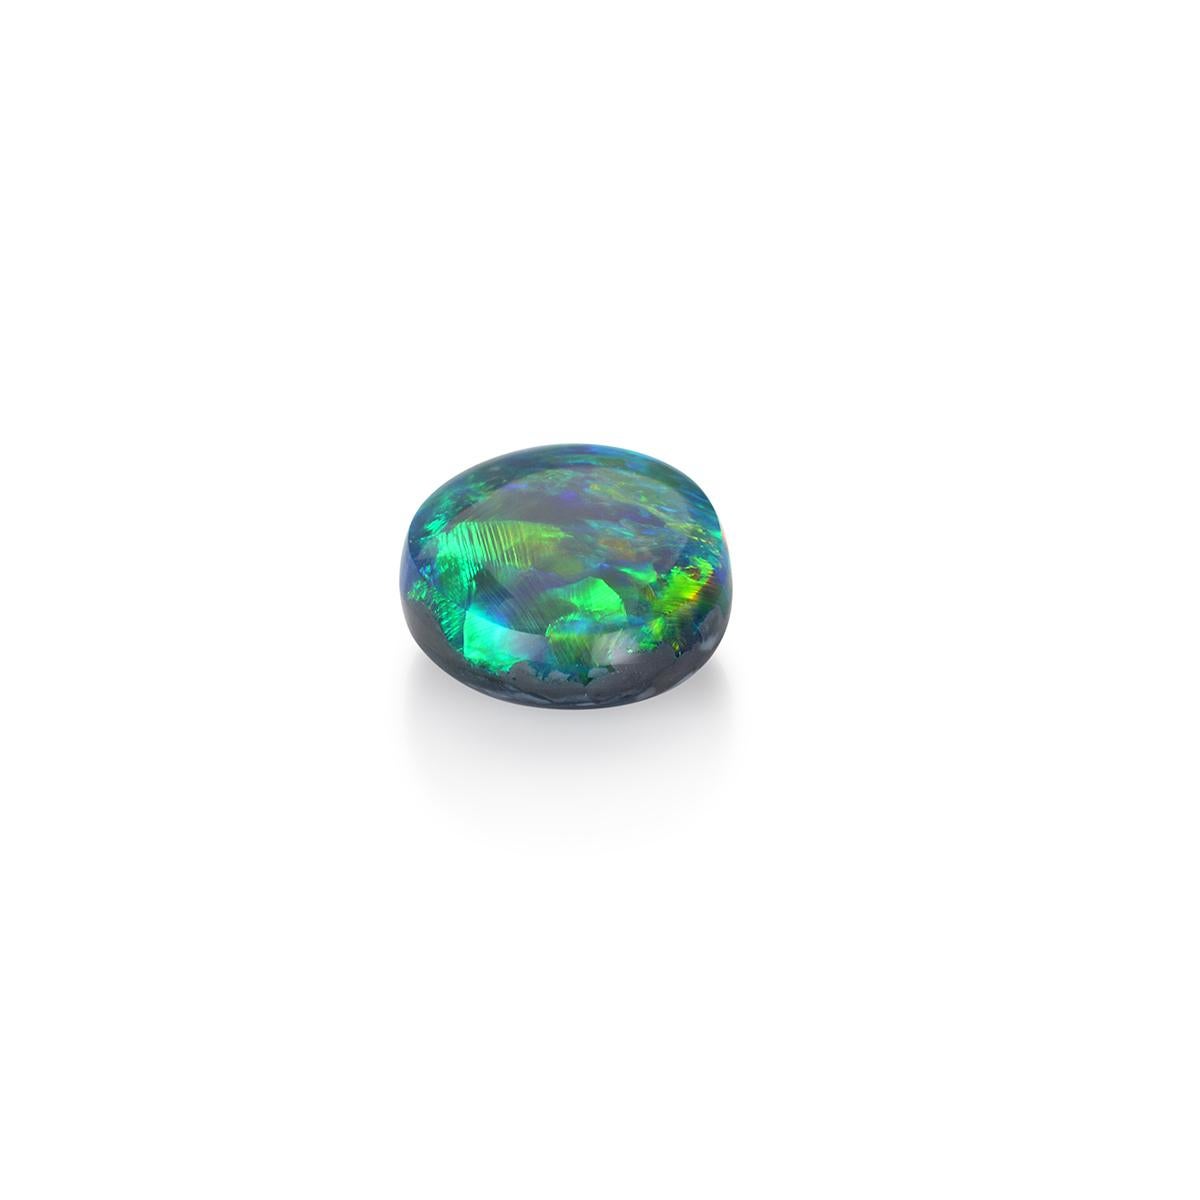 Spectaculaire par sa couleur et sa forme et présentant une étonnante gamme de couleurs, cette opale noire naturelle de 4,75 carats est une pierre de qualité gemme pour le collectionneur passionné ou l'amateur de bijoux. 

Contrairement aux opales